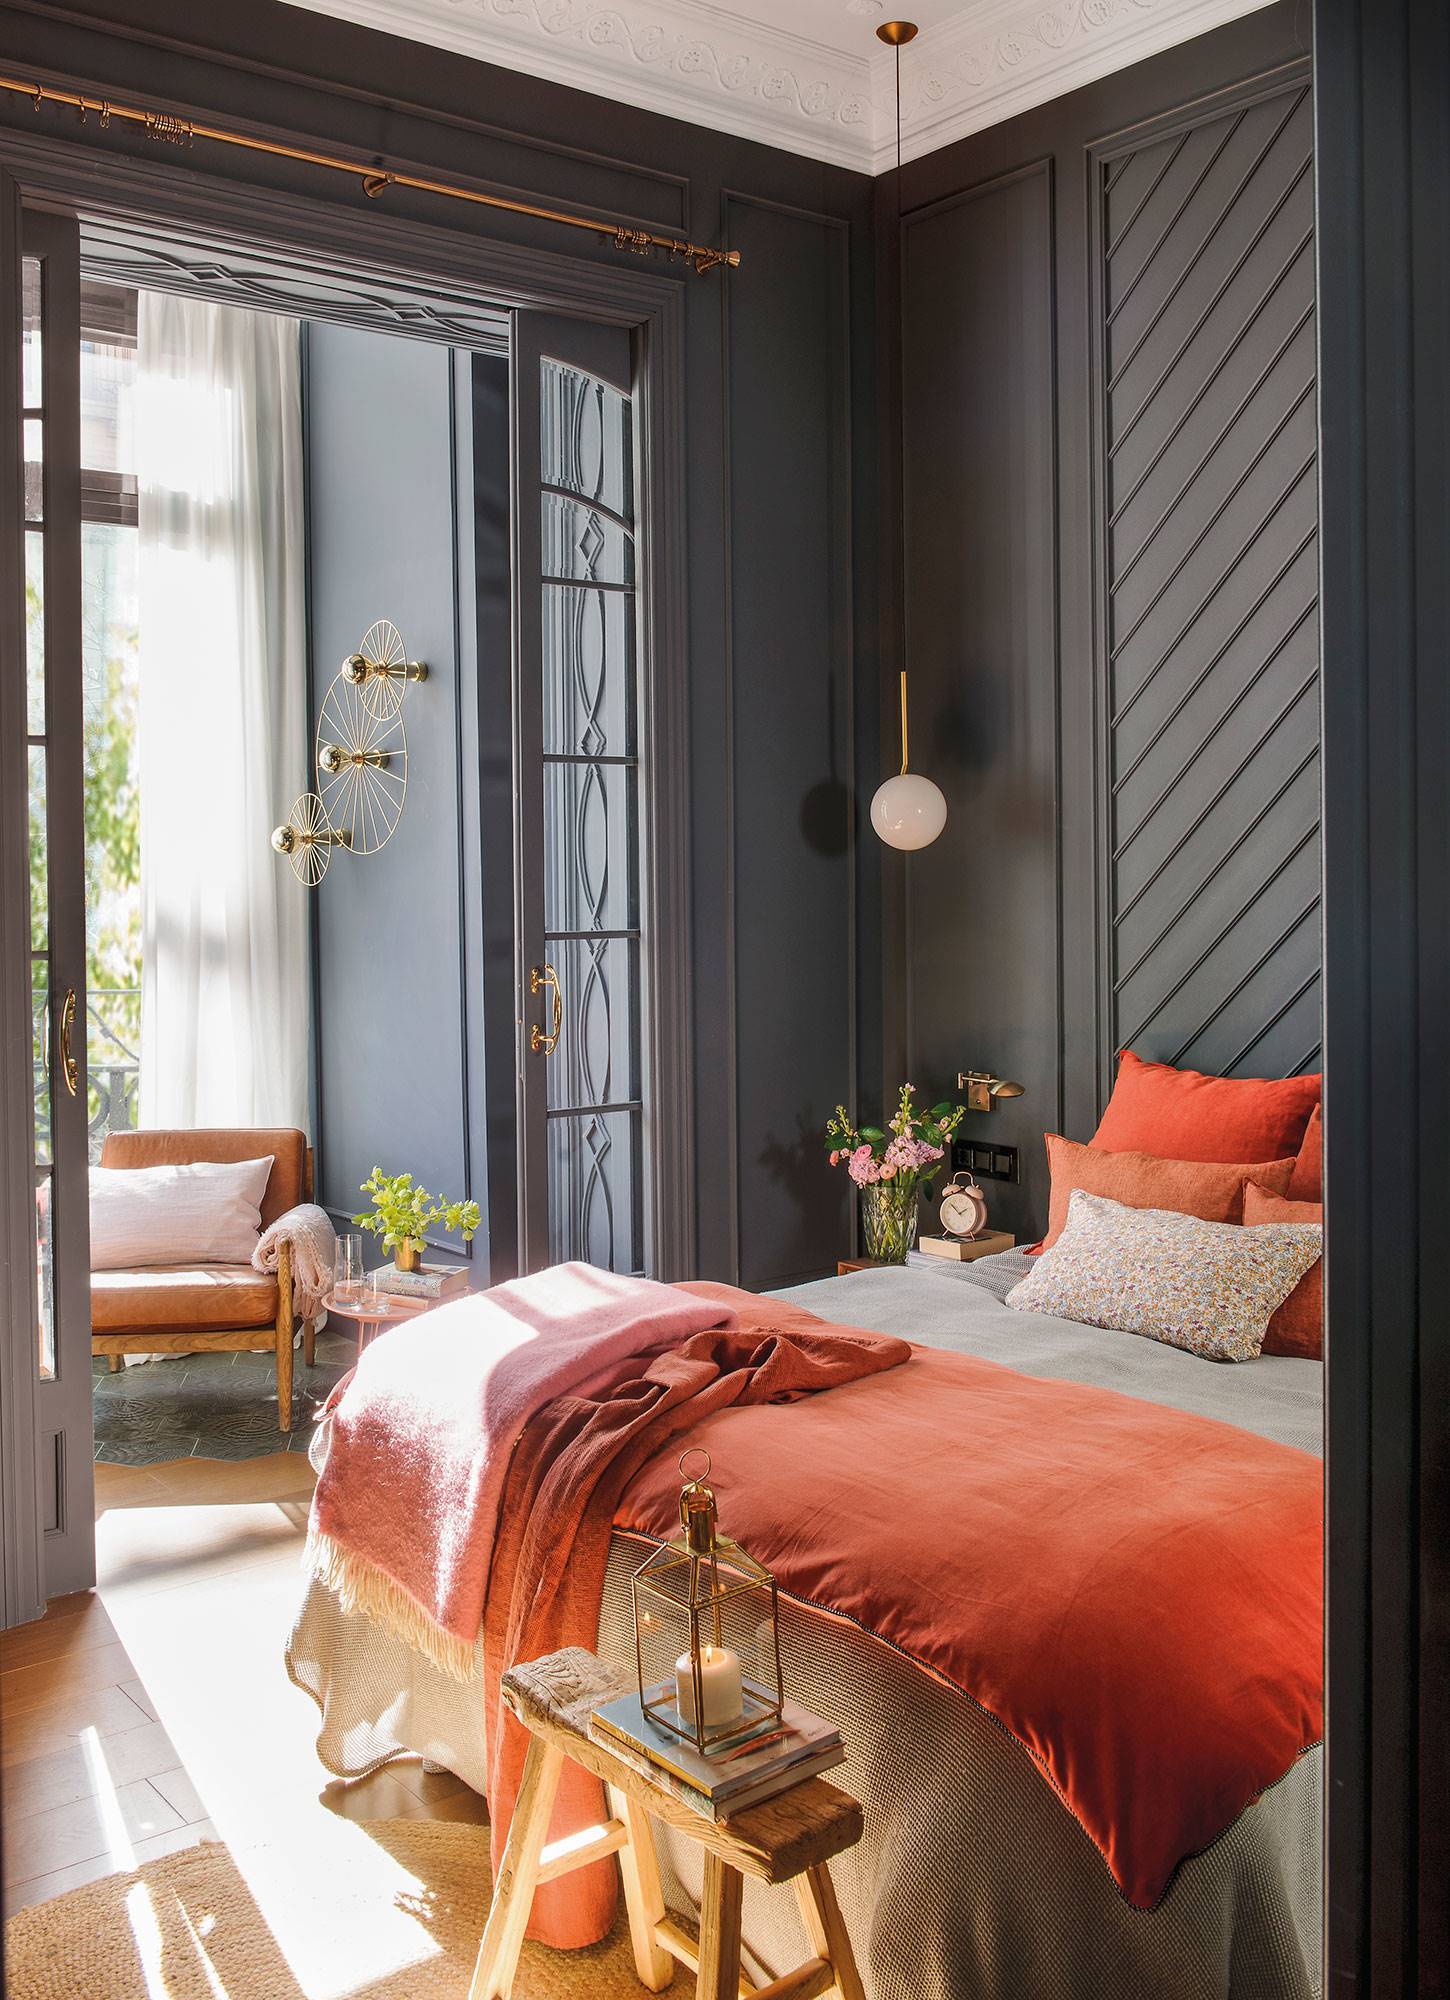 Combinación de colores oscuros y colores vivos en dormitorio principal.